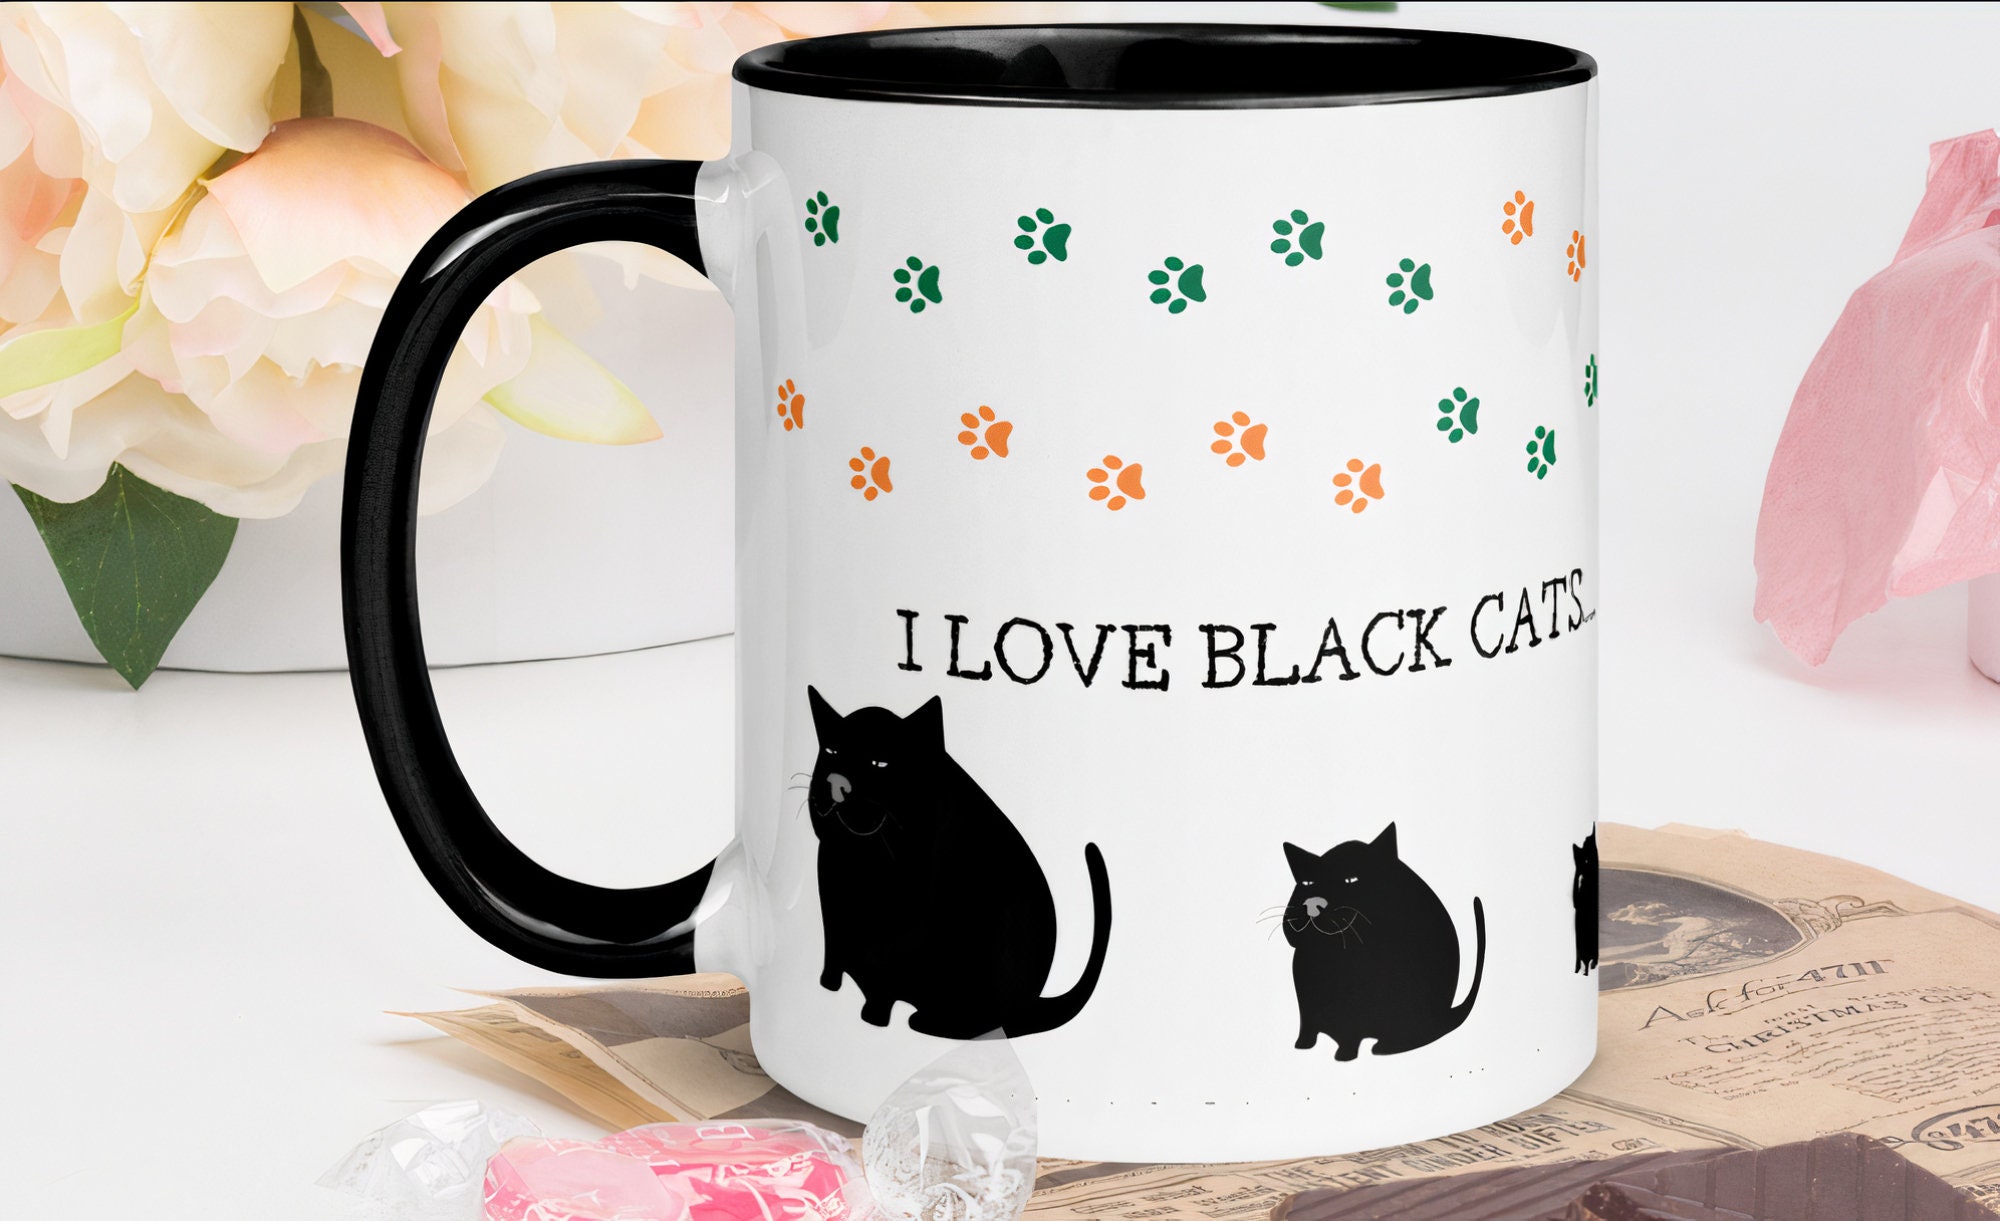 Black Cats Cute Mug With Color Inside - Tasse à Café Chats Noirs Pour Les Amoureux Des Noirs